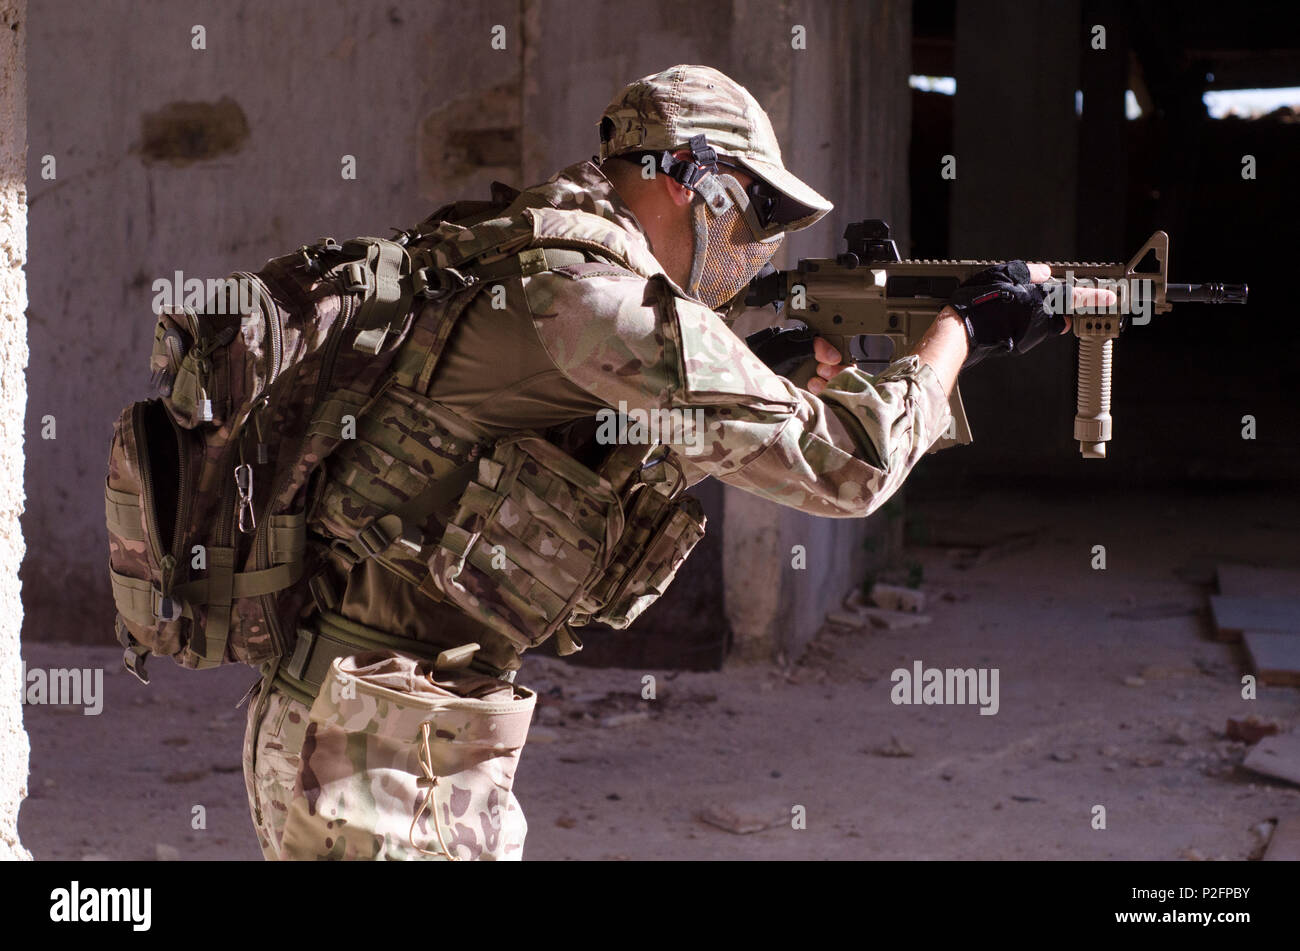 Soldat des forces spéciales à l'intérieur du bâtiment objectif carabine de tir Banque D'Images